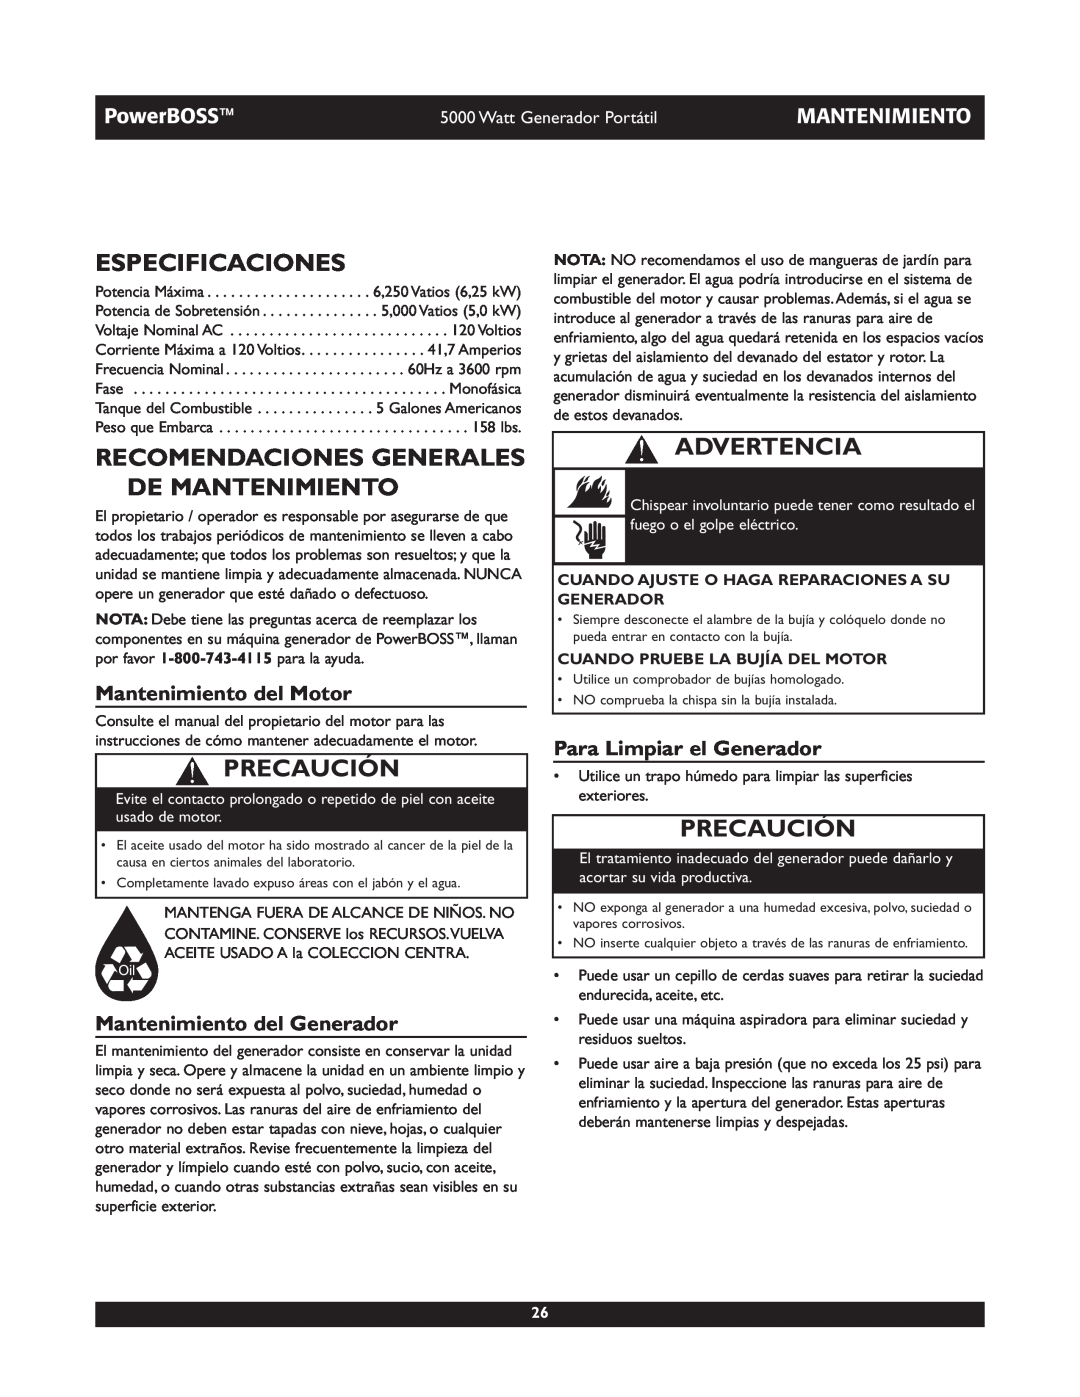 Briggs & Stratton 030222 Especificaciones, Recomendaciones Generales De Mantenimiento, Mantenimiento del Motor, Precaución 